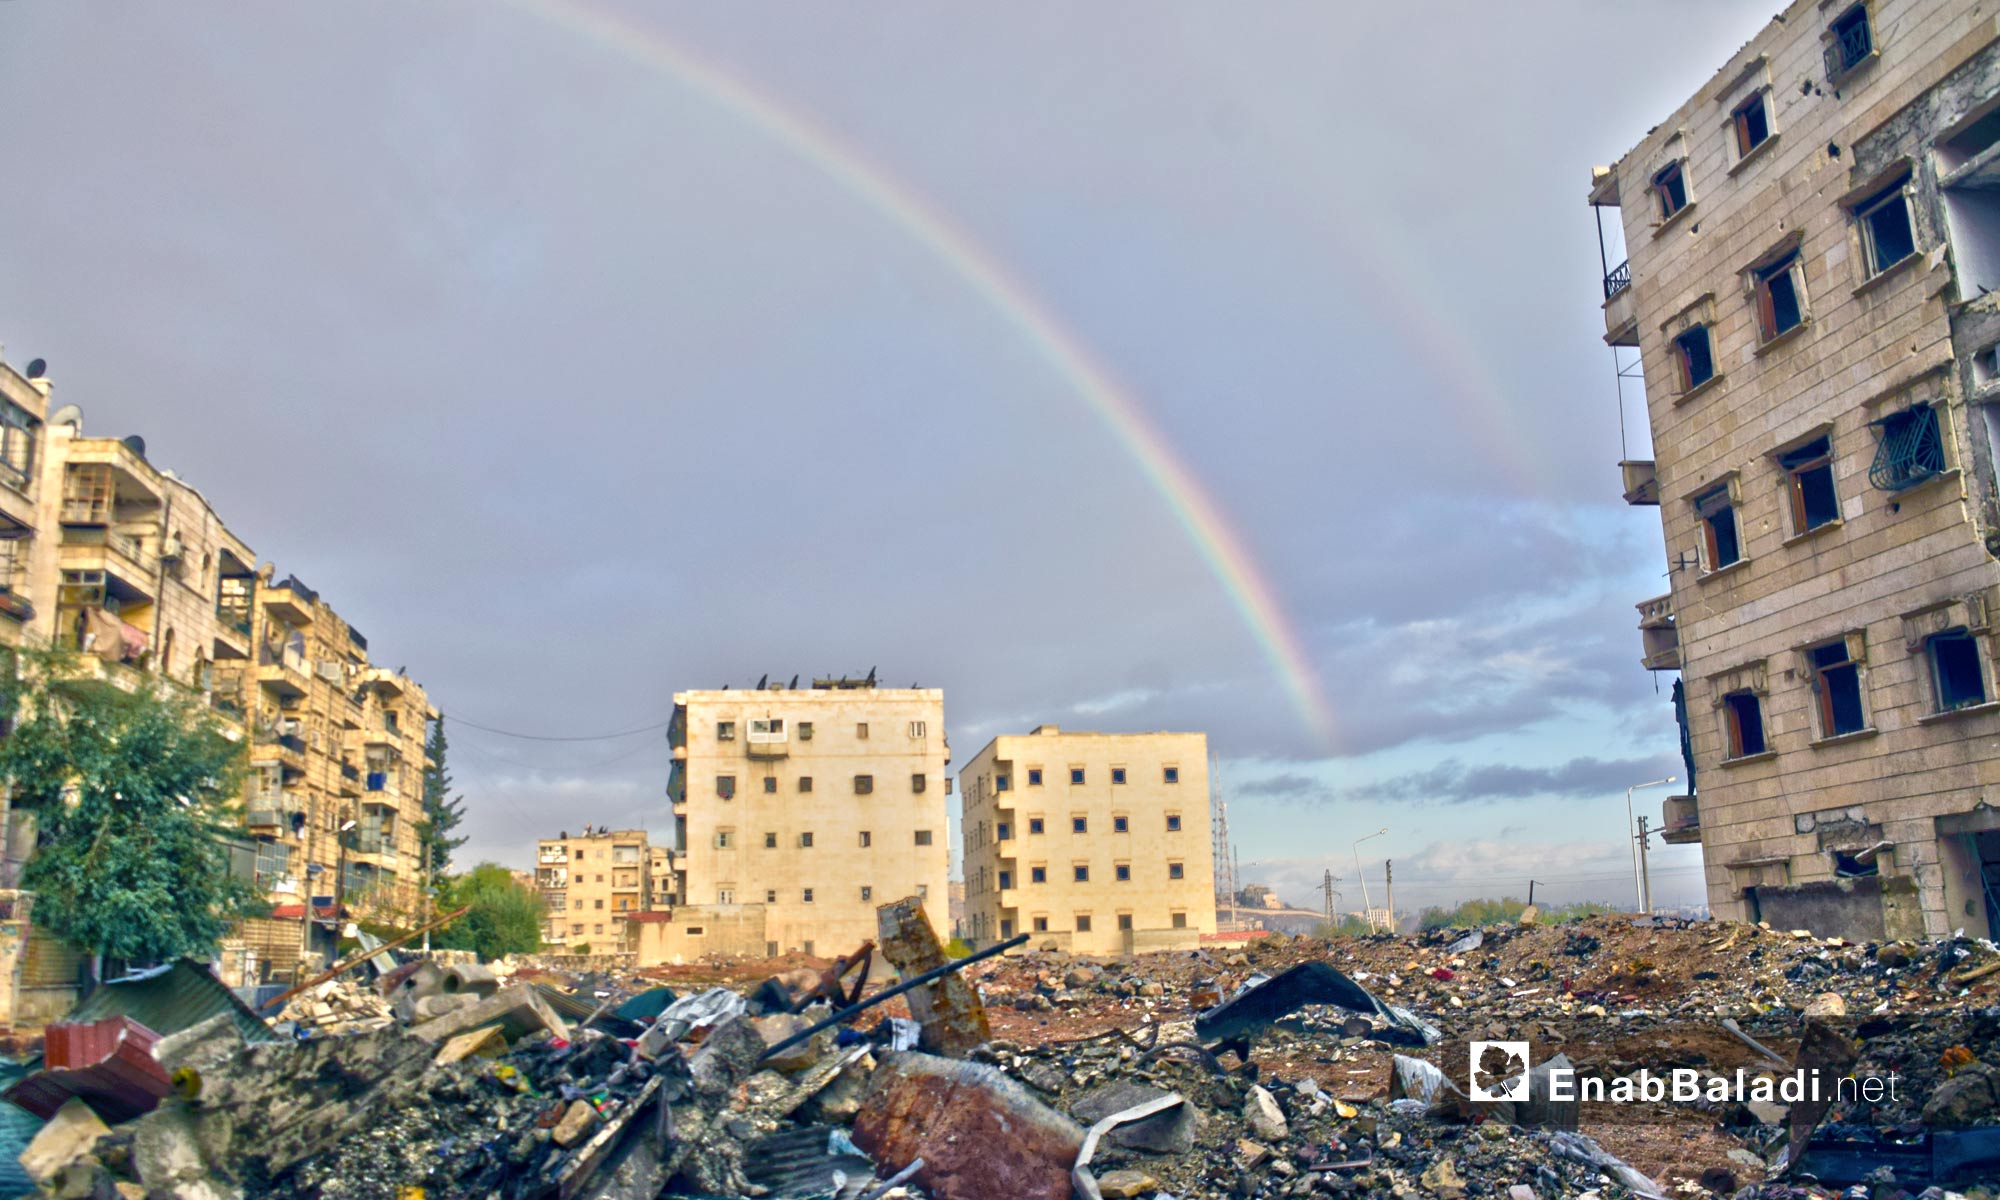 قوس قزح في سماء حلب المحاصرة - 3 كانون الأول 2016 (عنب بلدي)